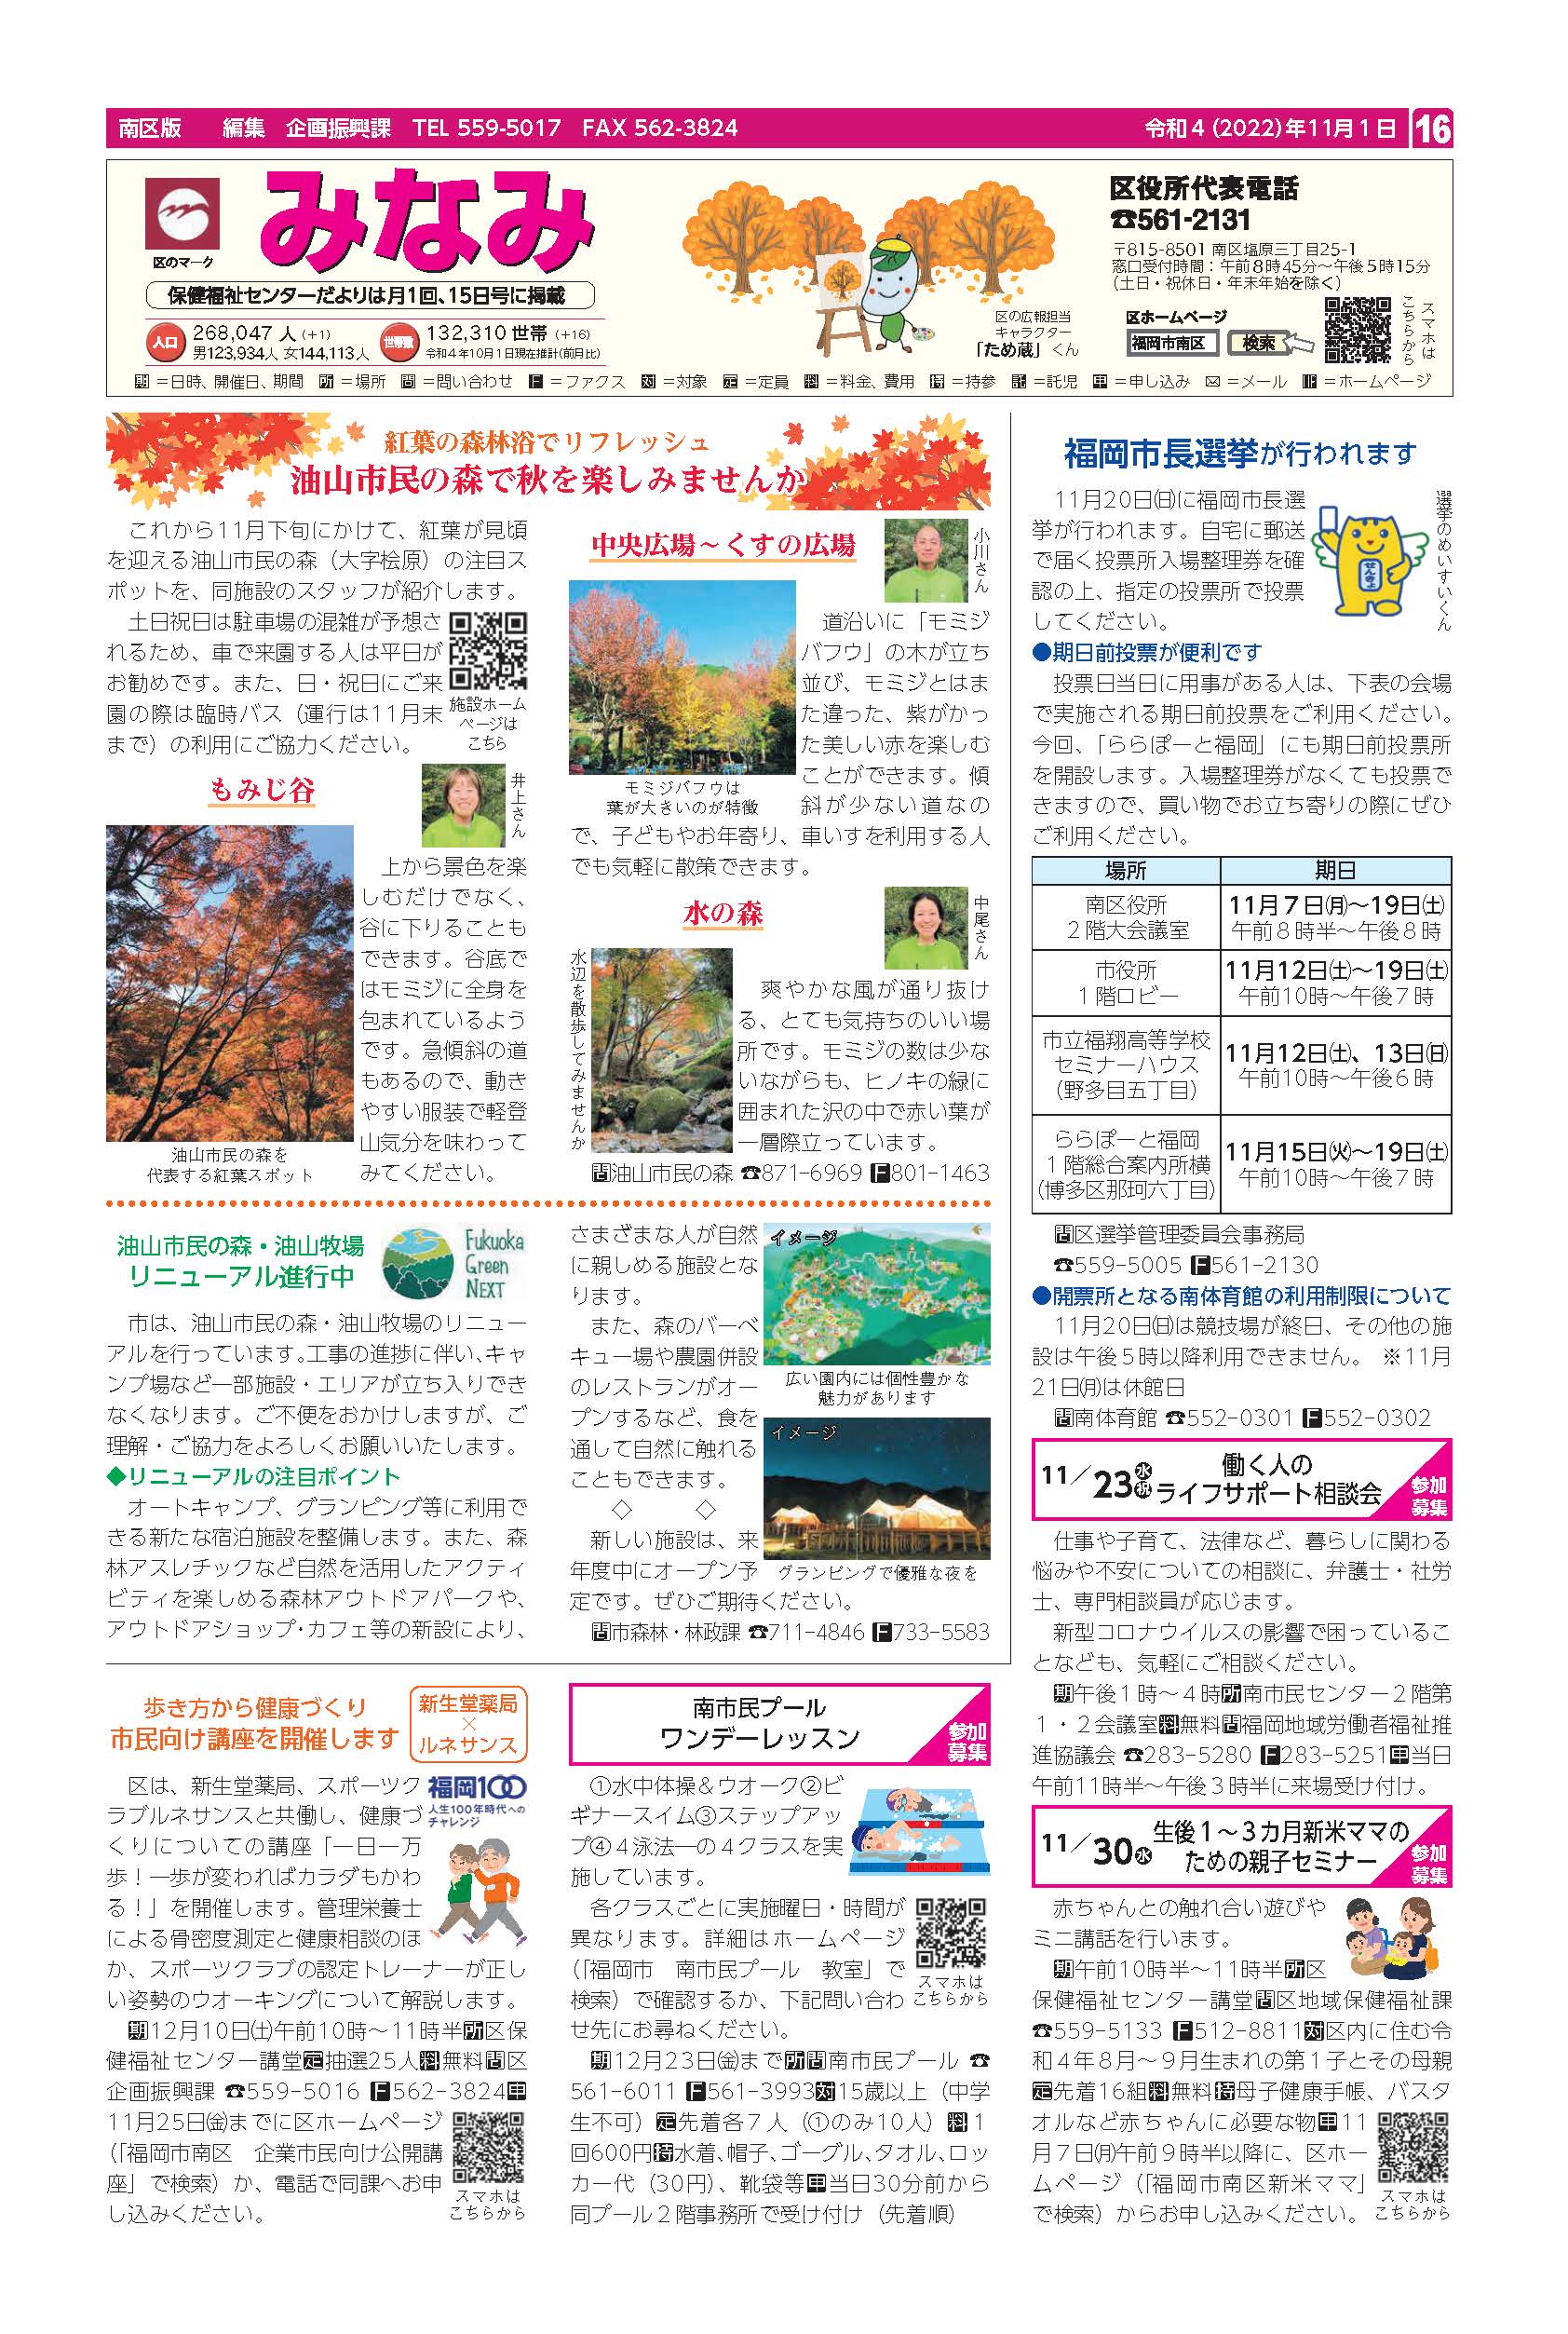 福岡市政だより2022年11月1日号の南区版の紙面画像